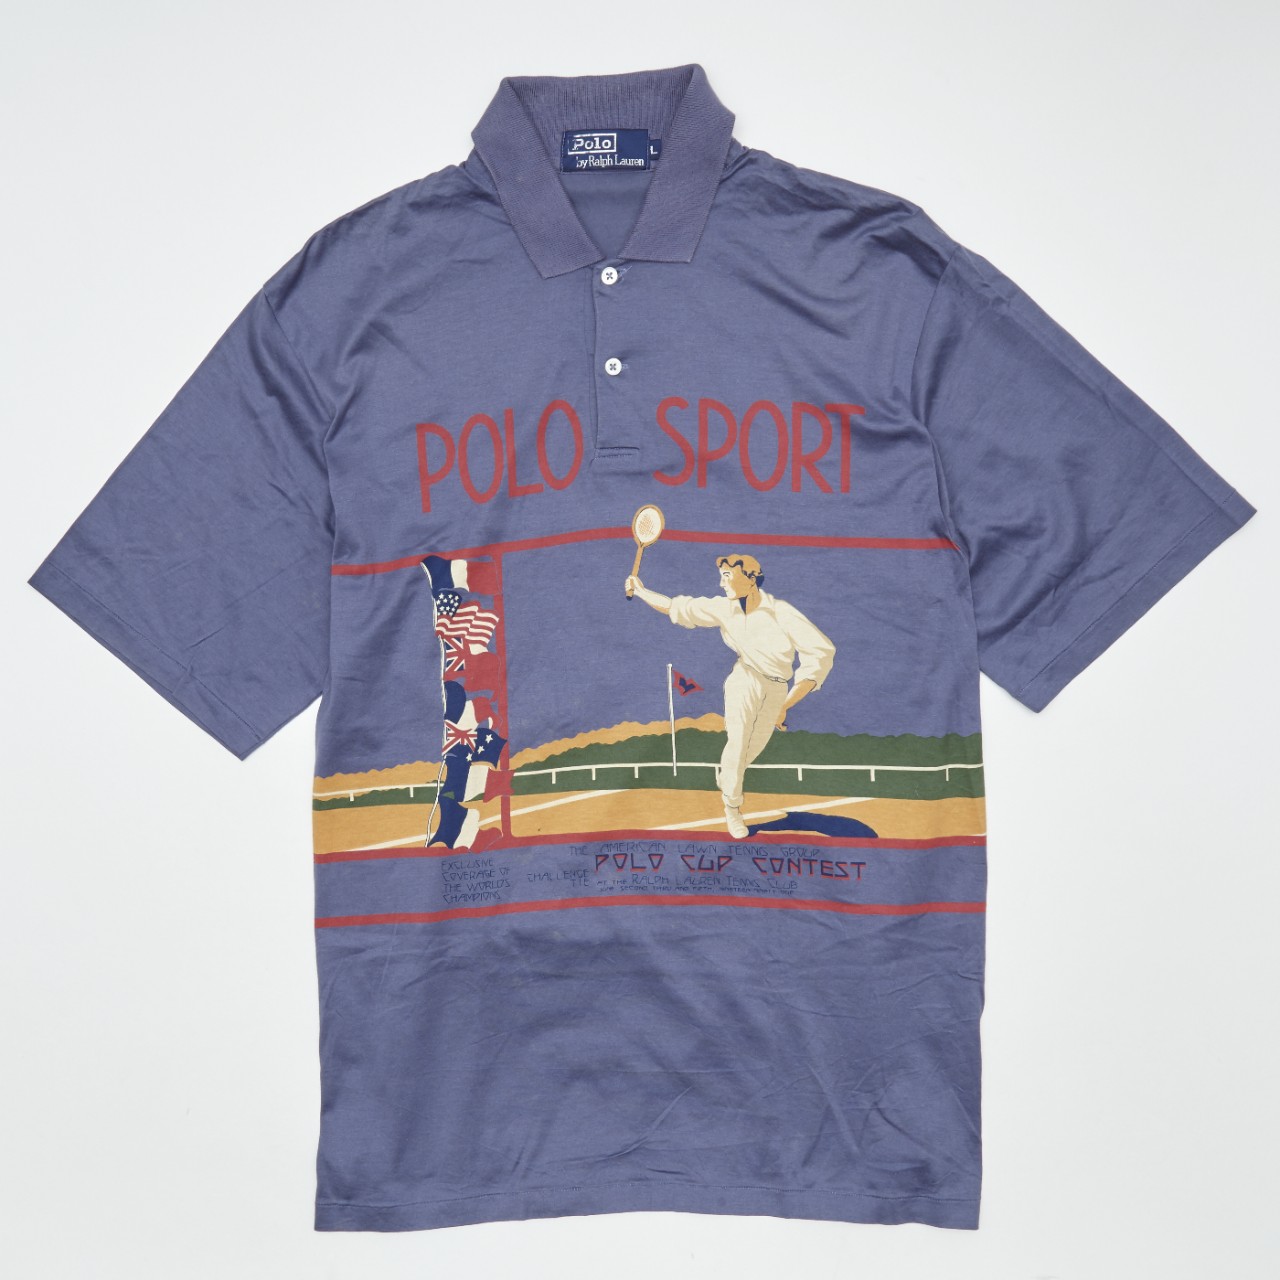 Ralph Lauren Polo Shirt Turns 50